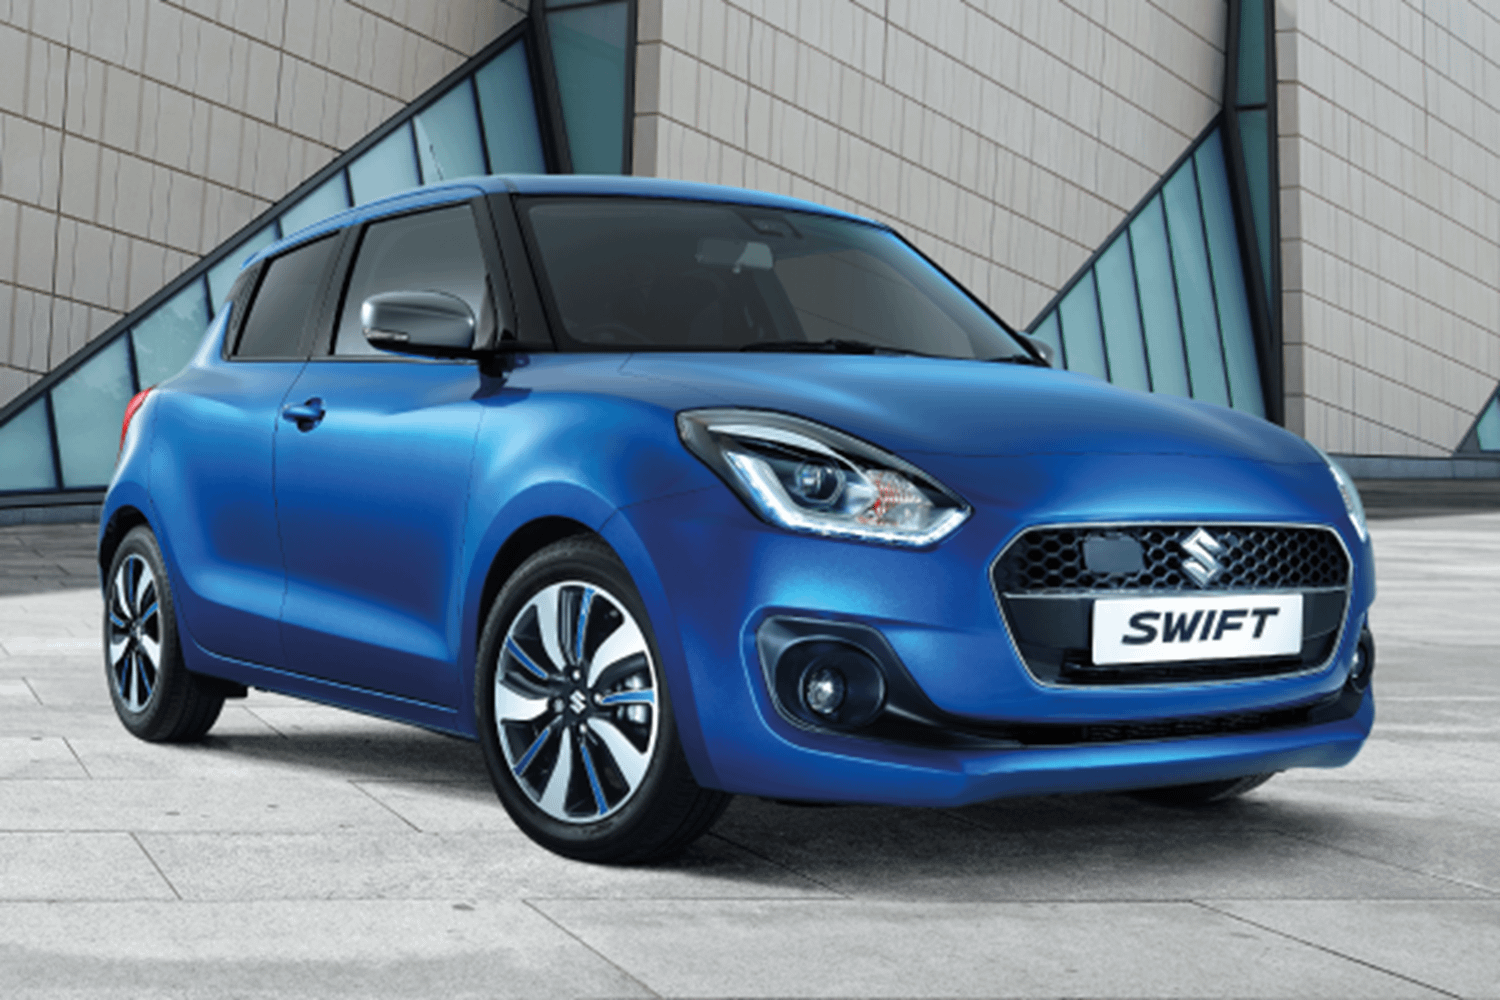 Suzuki Swift, Price, Speed, Reliability